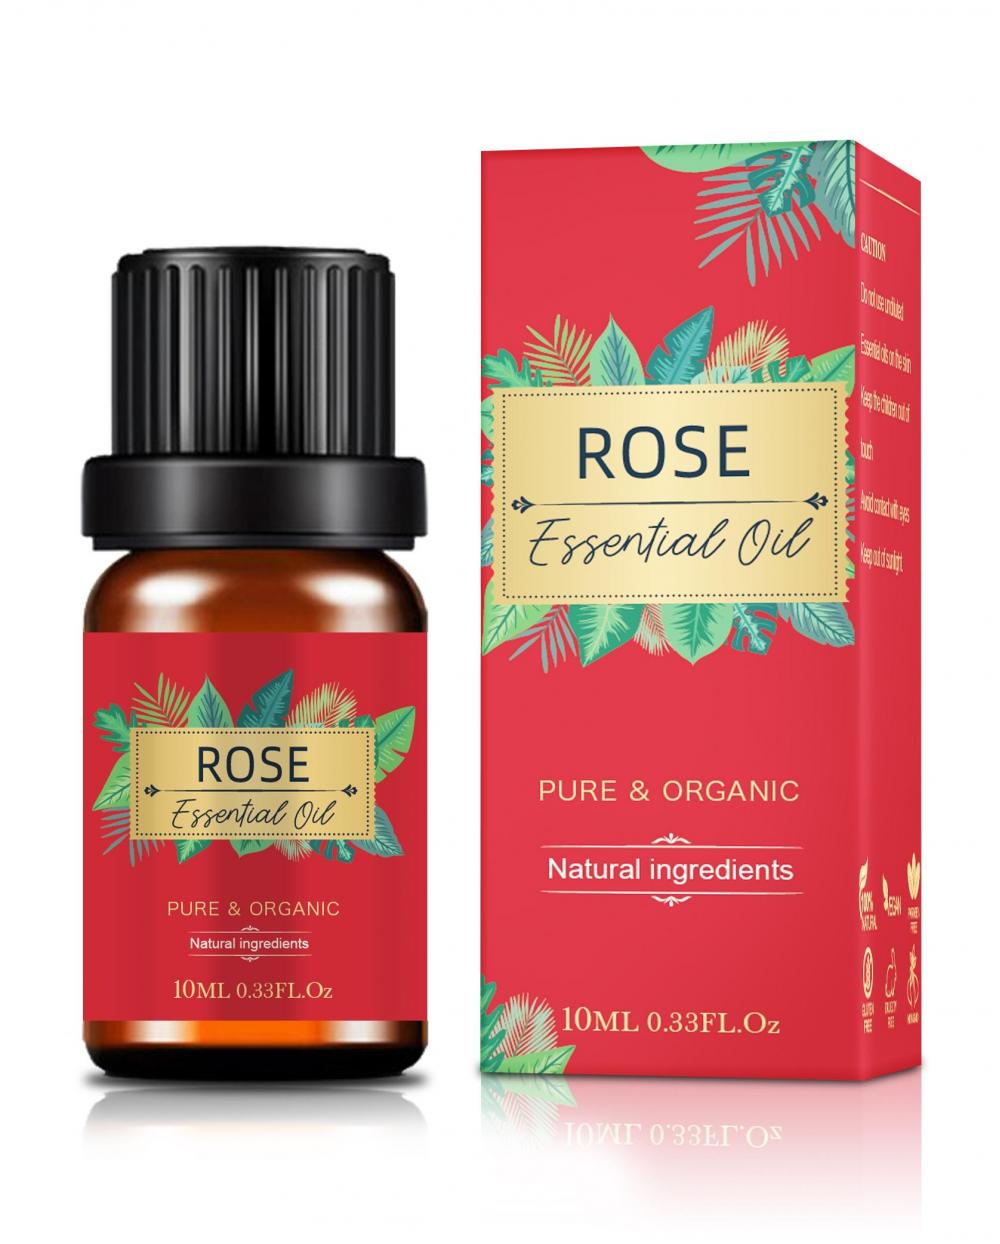 Óleo de massagem essencial de rosa 100% puro corporal orgânico natural Óleo de face rosa Óleo essencial